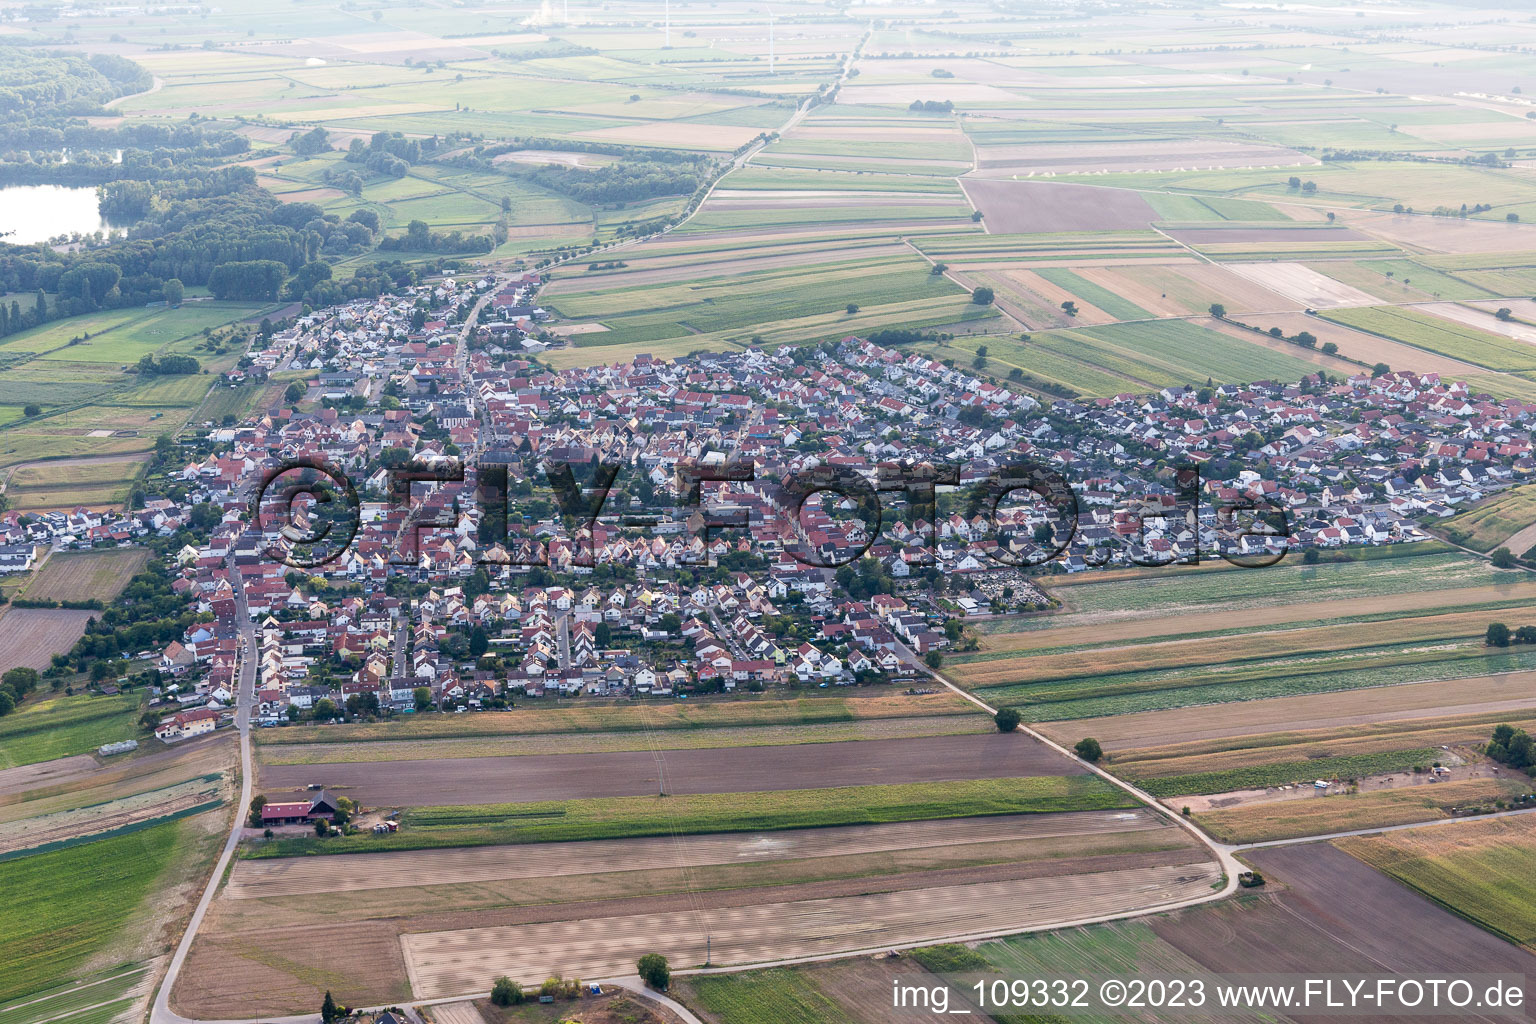 Quartier Mechtersheim in Römerberg dans le département Rhénanie-Palatinat, Allemagne depuis l'avion